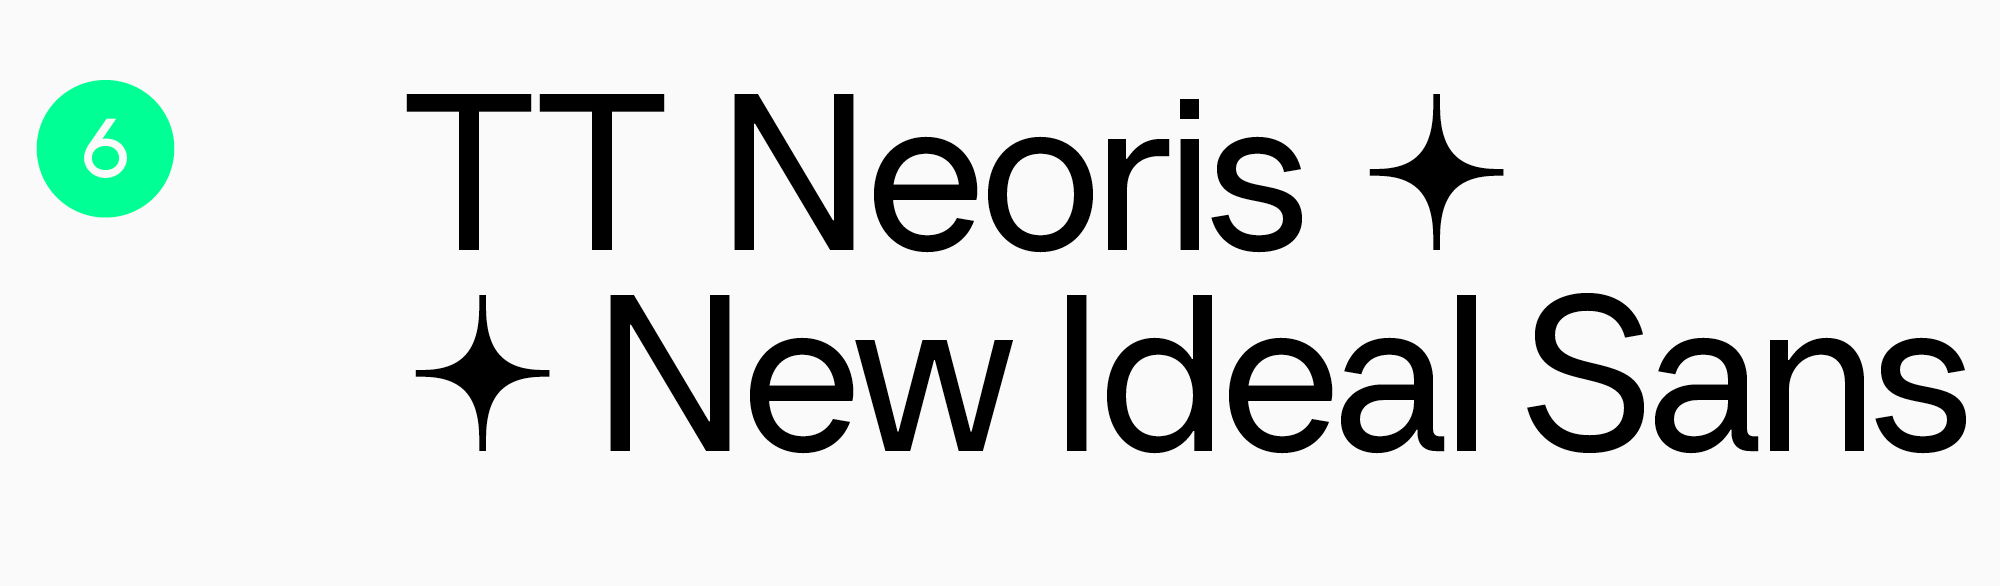 TT Neoris плакатно афишные шрифты